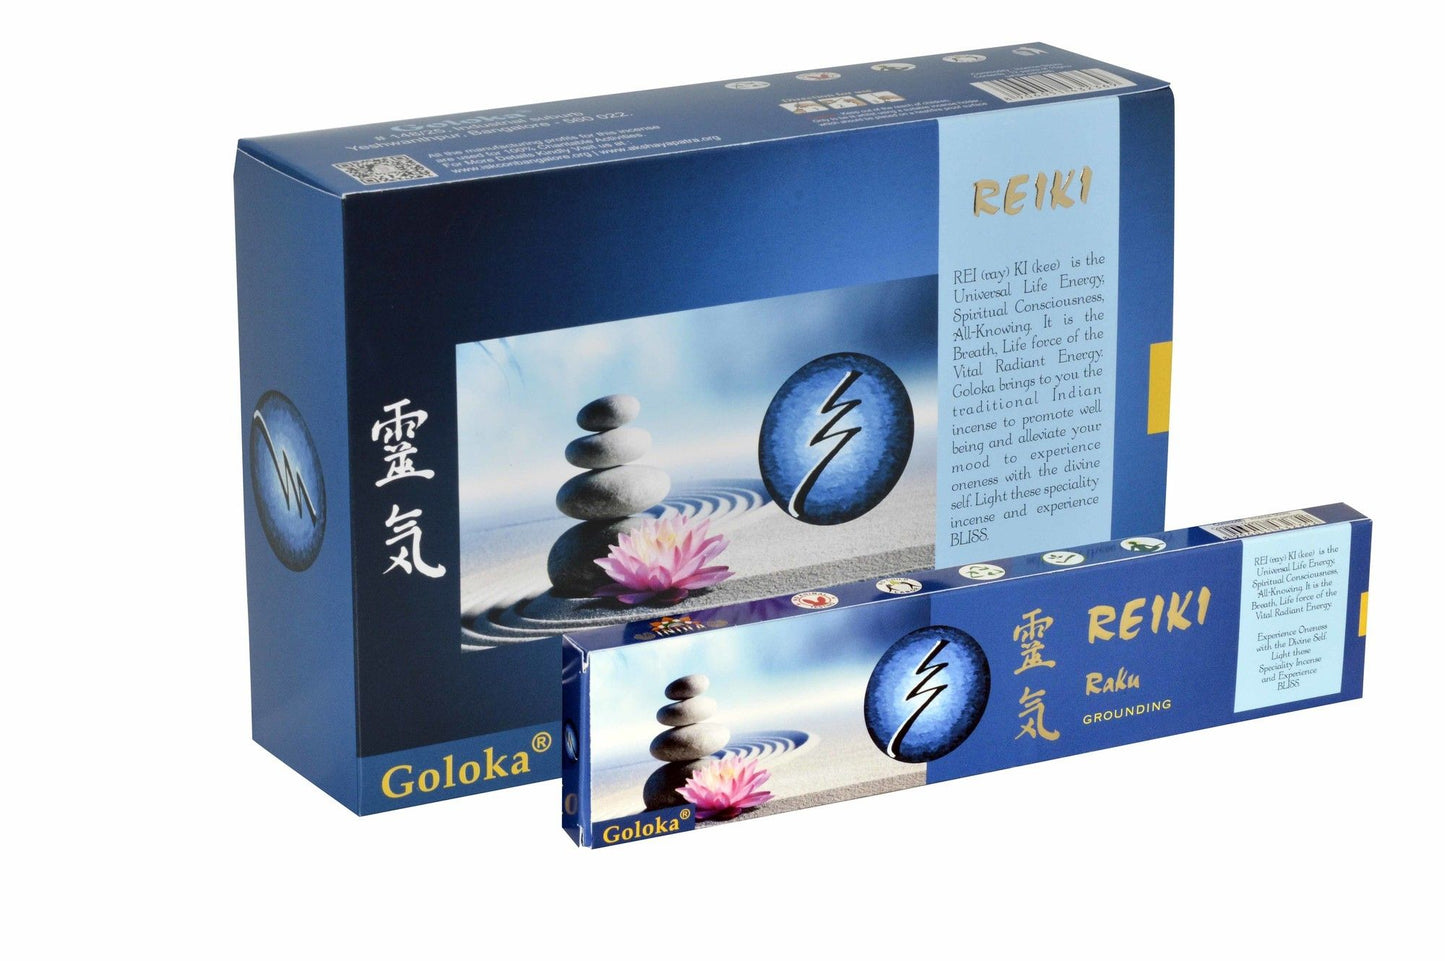 Goloka Reiki Serie Grounding Räucherstäbchen – Für Erdung und innere Balance